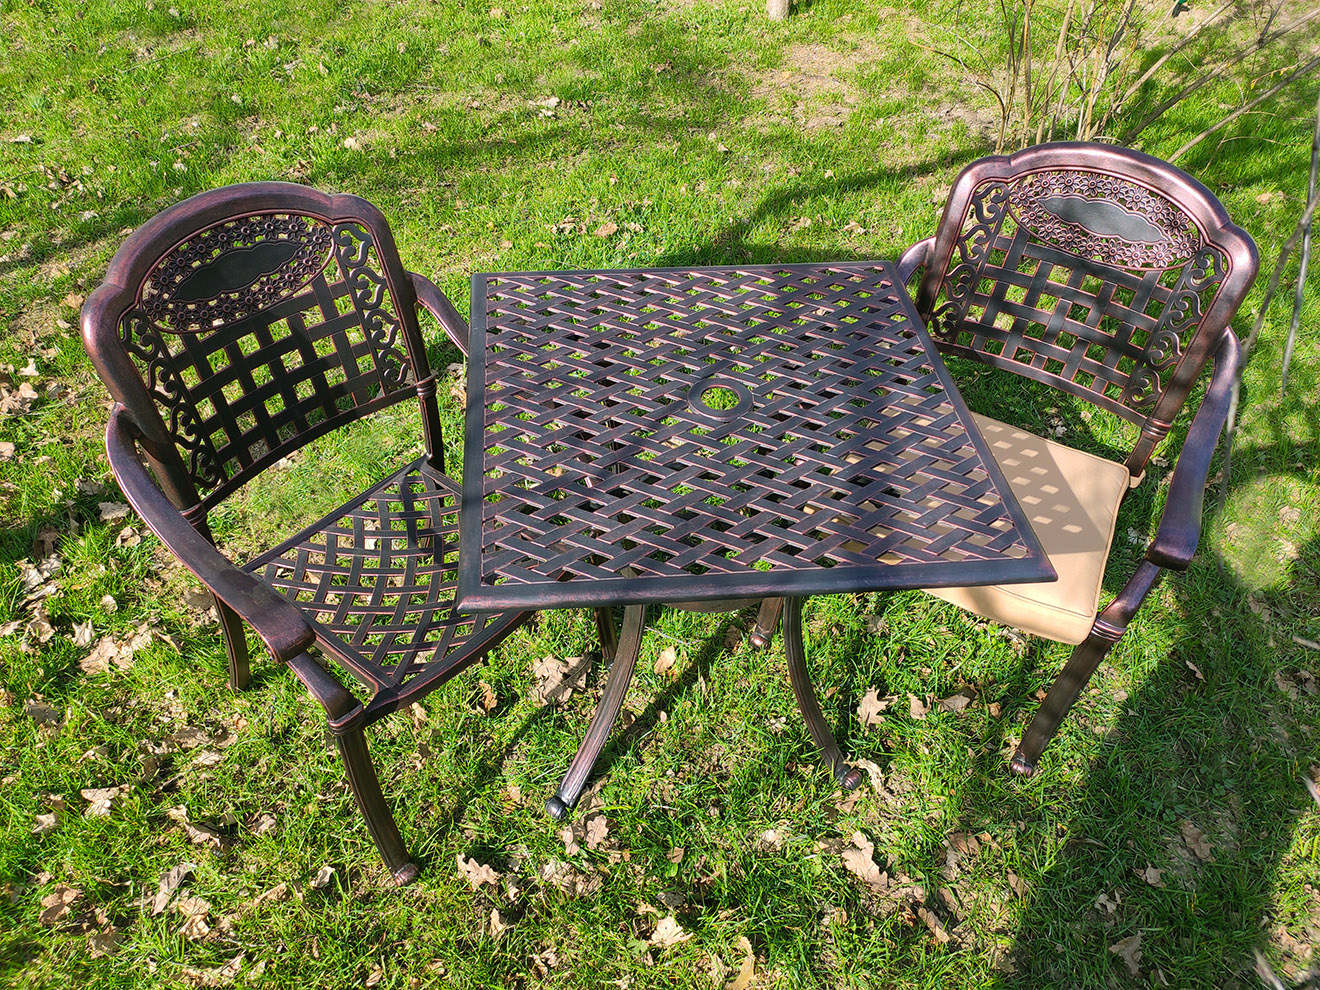 Кресло из металла для сада, кованое кресло, чугунная мебель для улицы, столик садовый, уличная мебель для кафе, металлическая садовая мебель